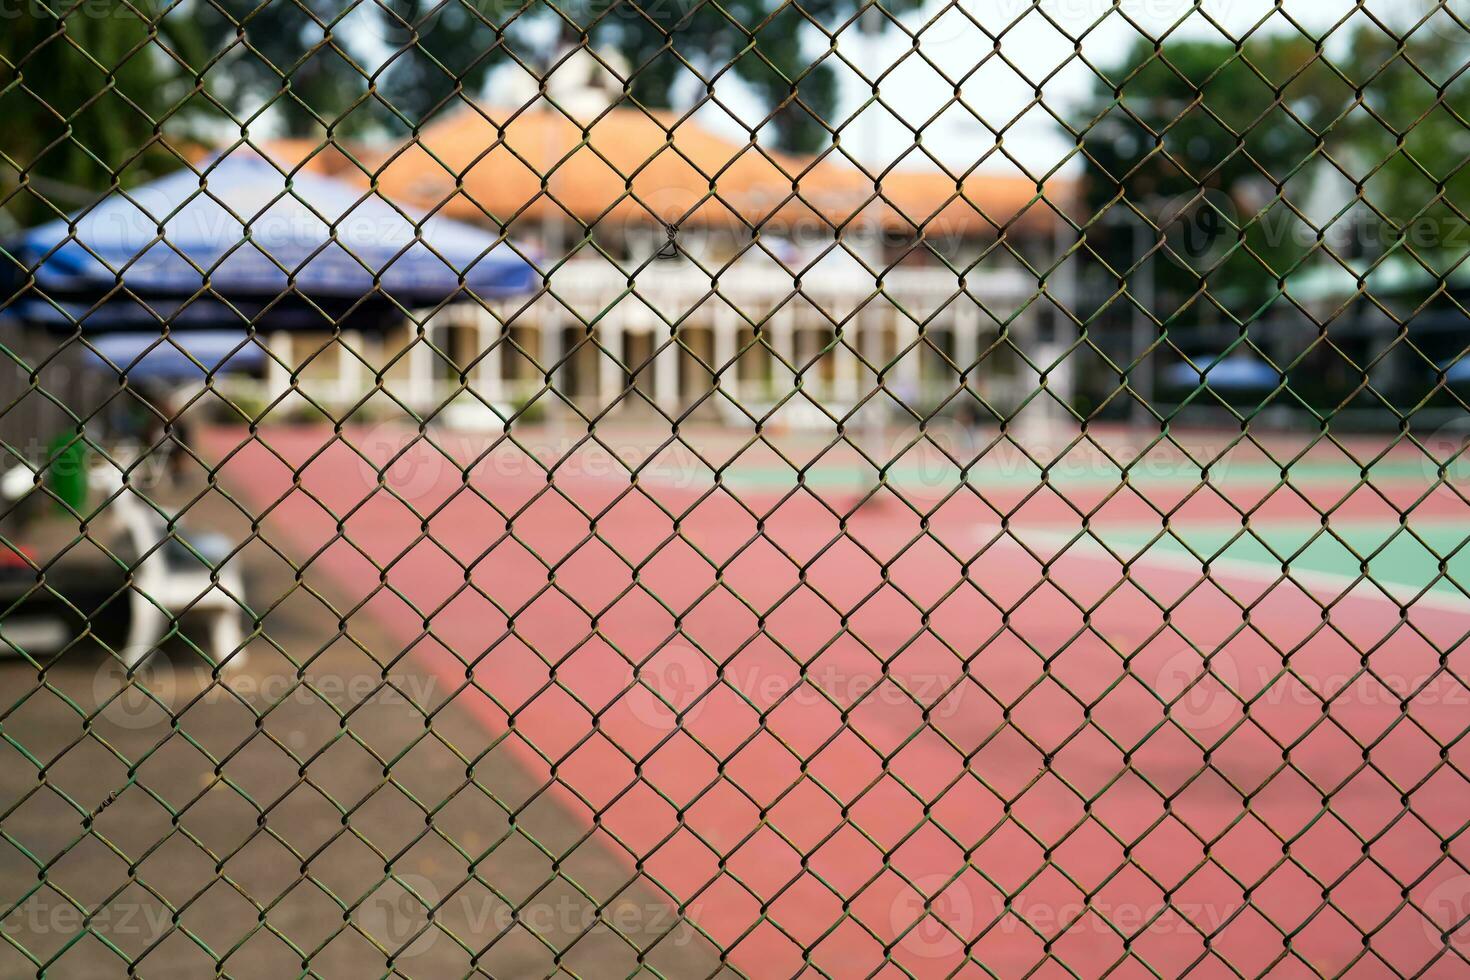 metal malha em uma borrado fundo do uma tênis quadra com jogadoras. foto